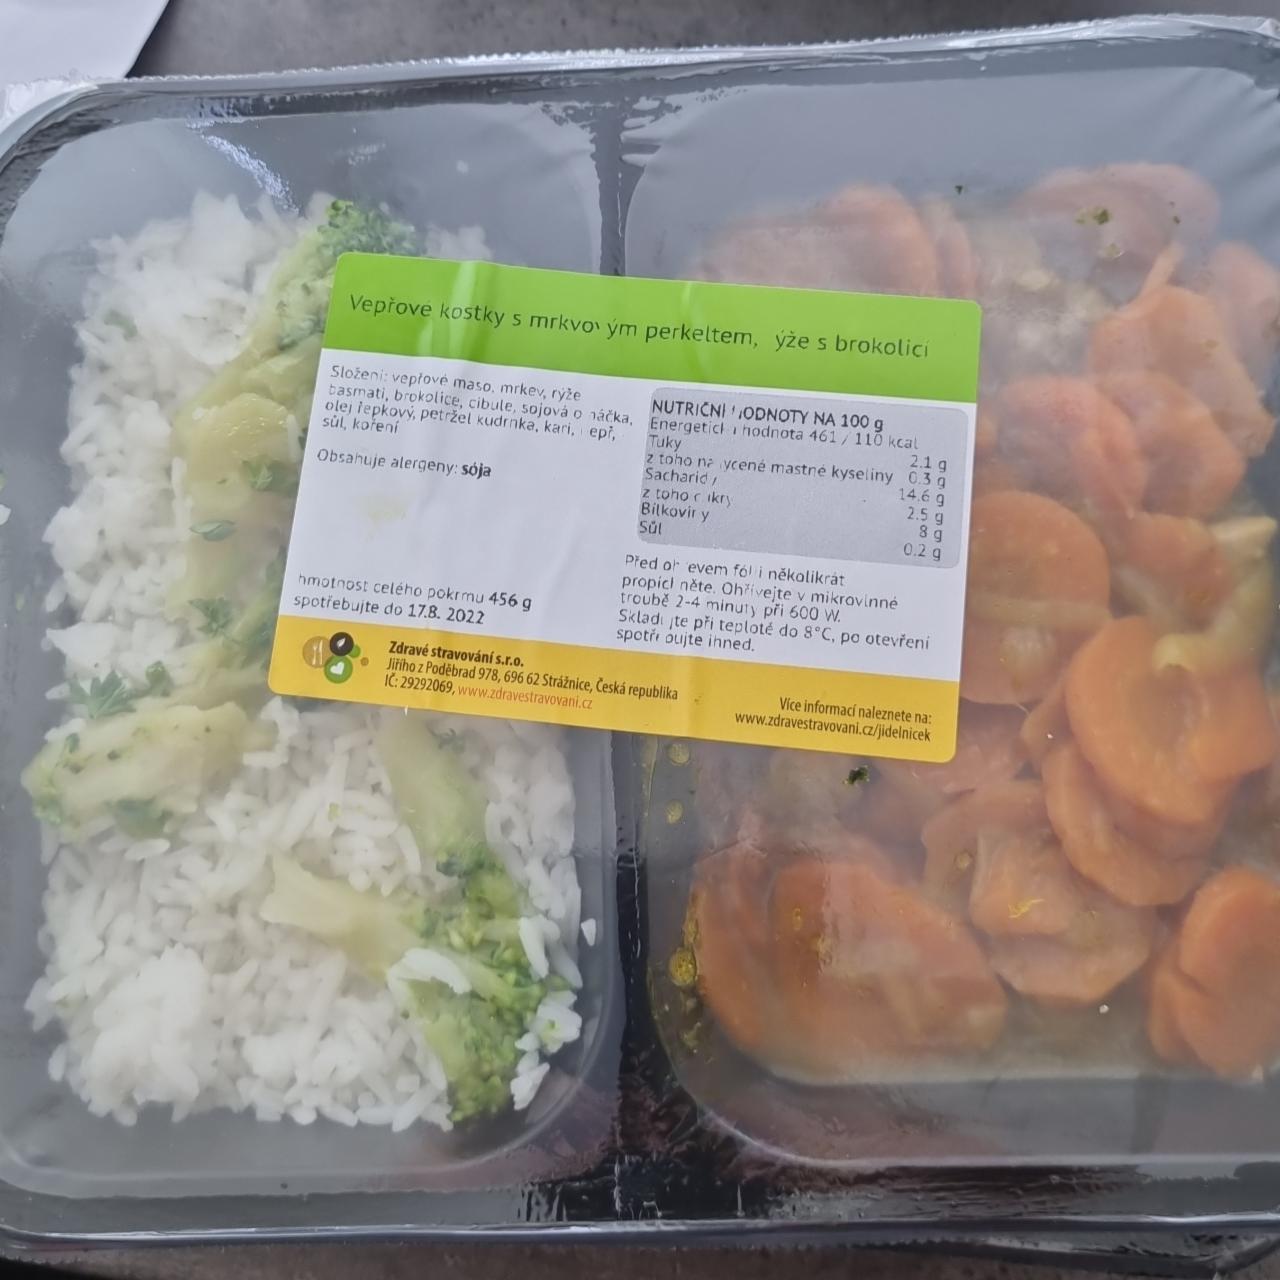 Fotografie - Vepřové kostky s mrkvovým perkeltem, rýže s brokolicí Zdravé stravování